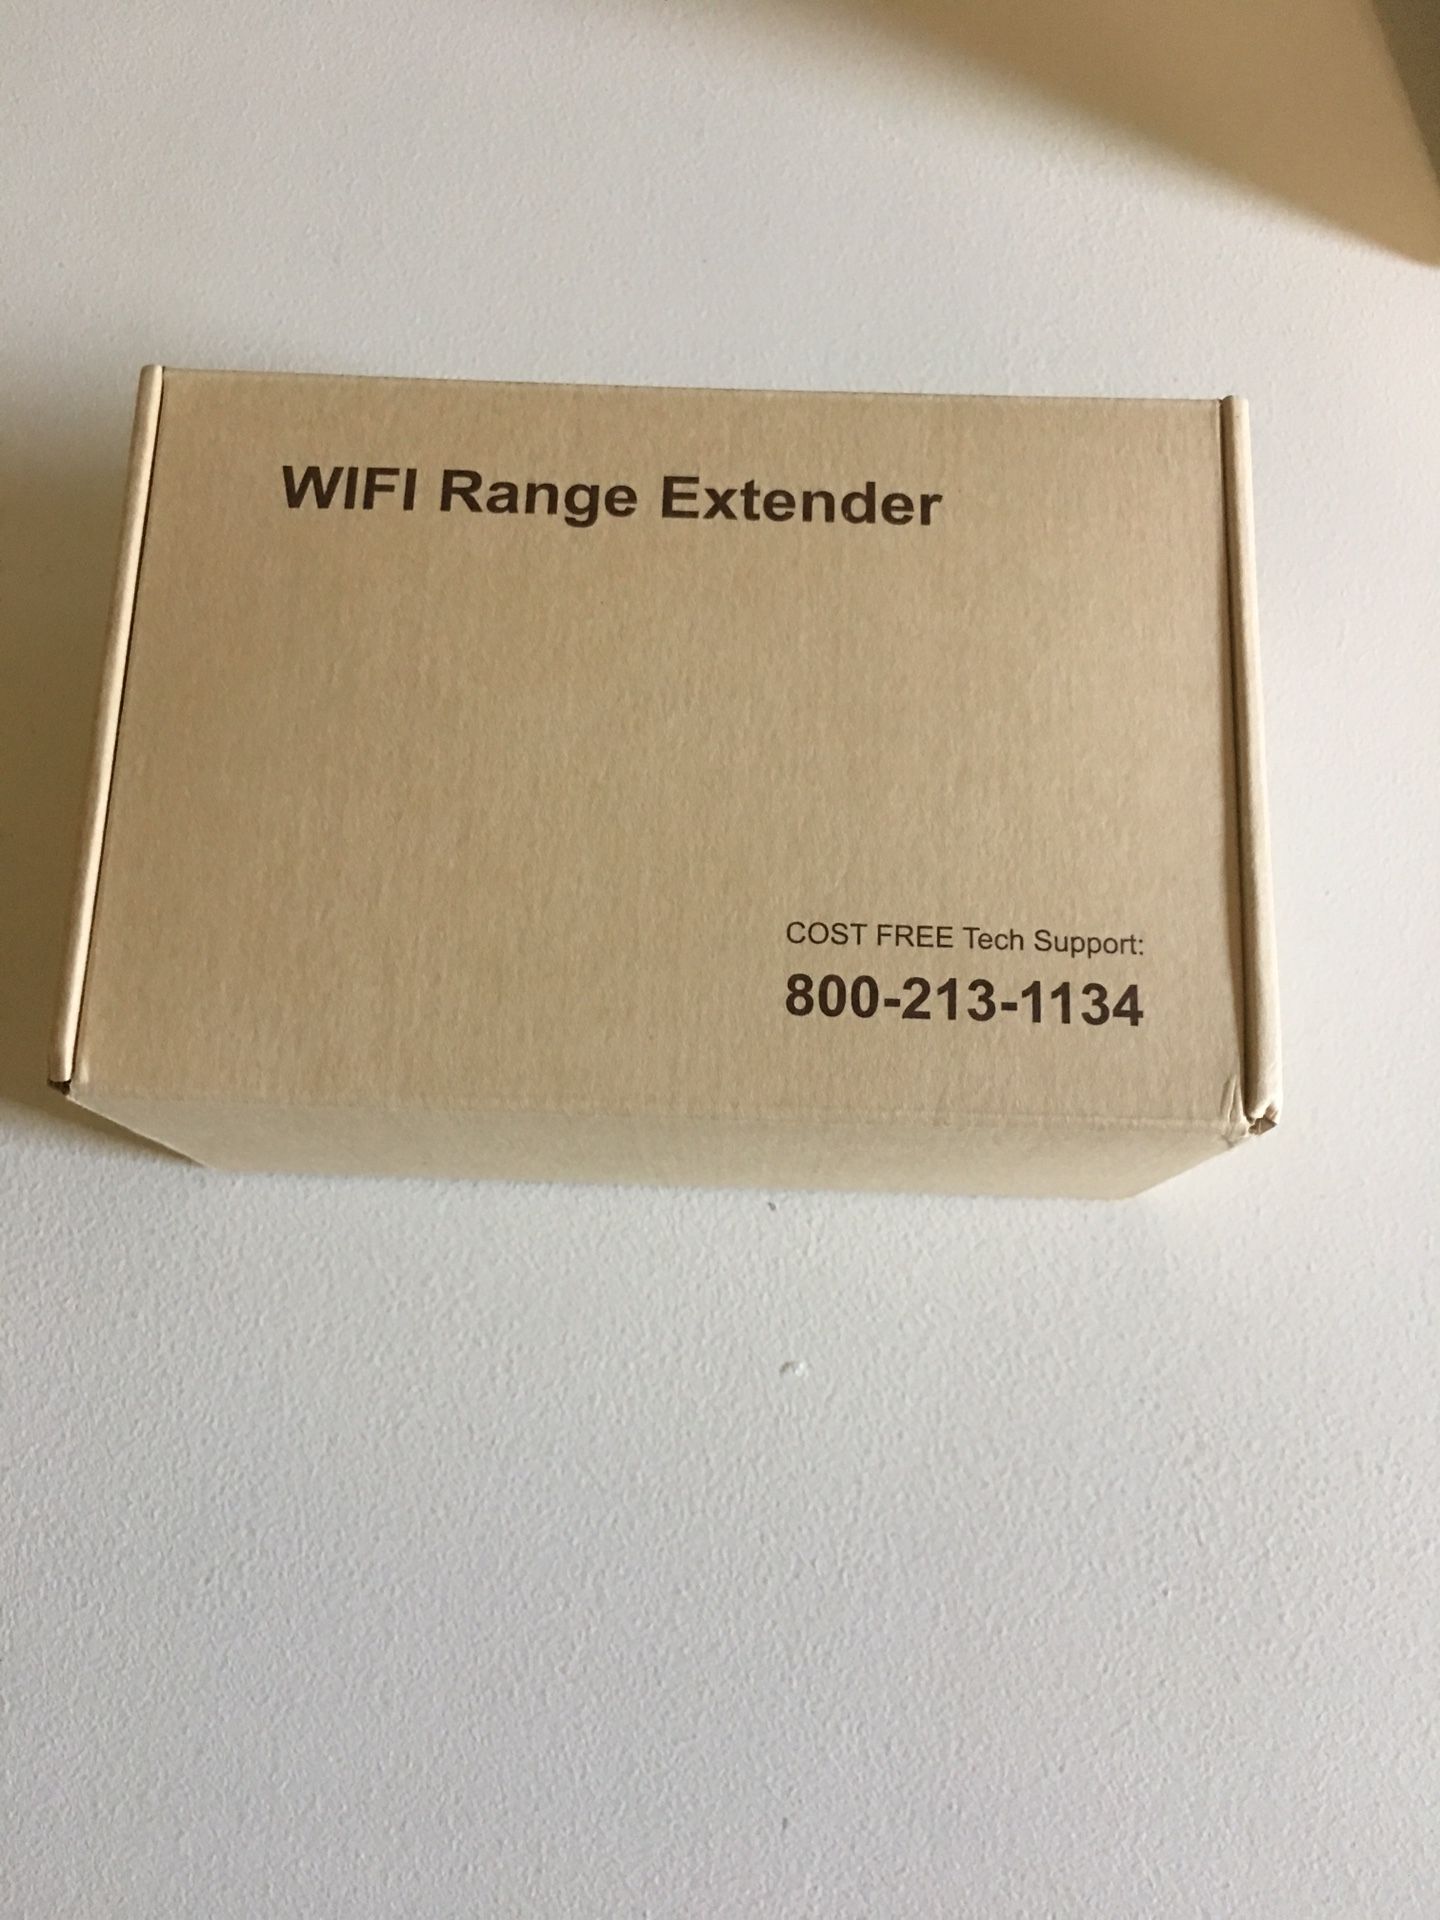 WiFi Ranger extender